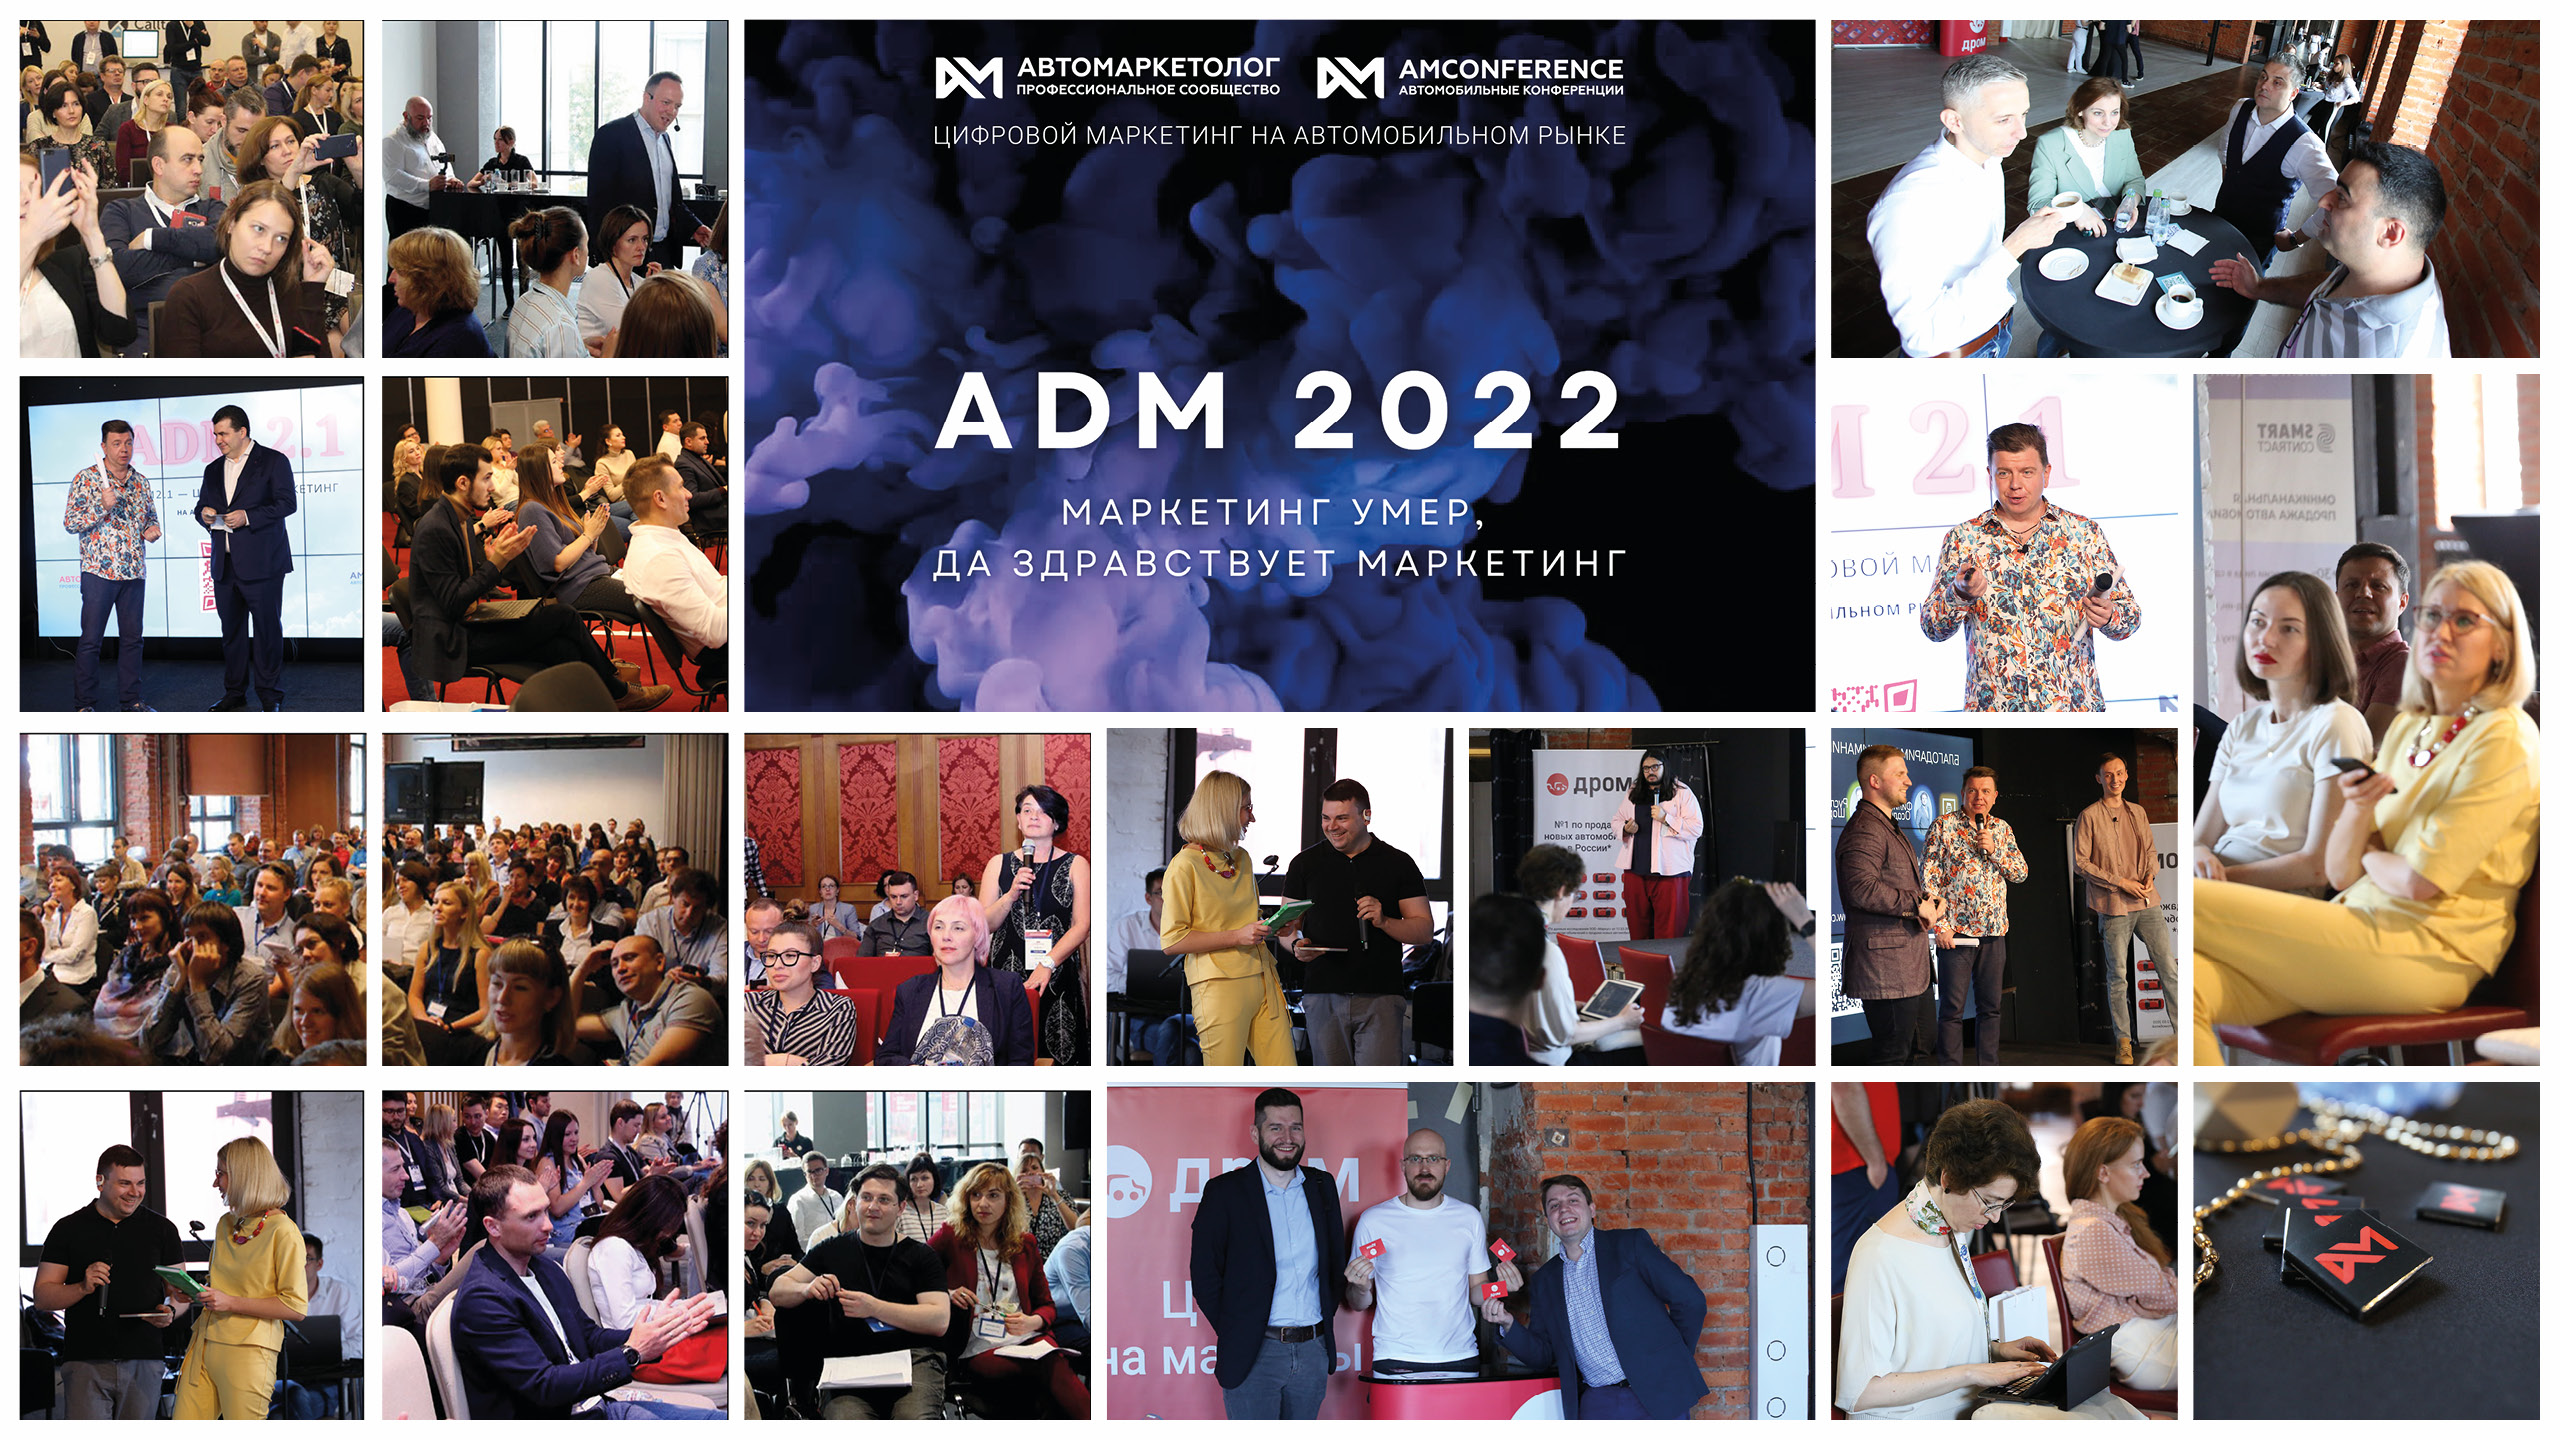 6 июня состоится конференция «Автомаркетолога» – «ADM 2022. Маркетинг умер, да здравствует маркетинг!»